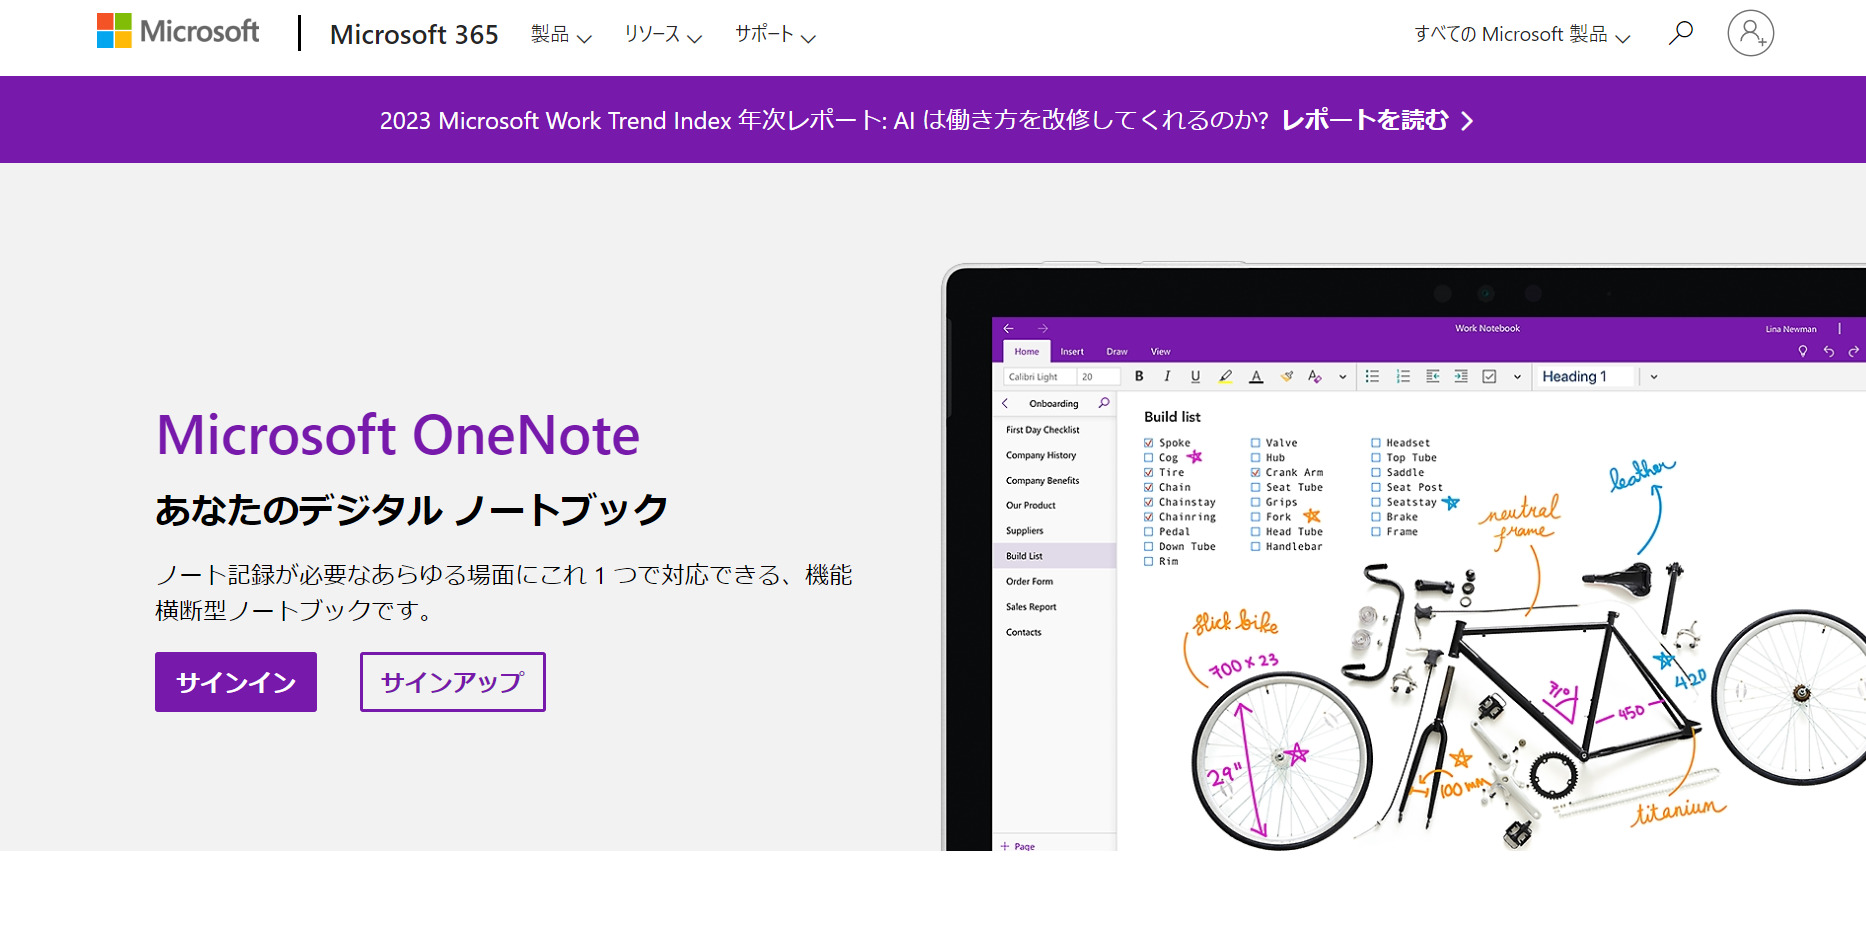 Microsoft OneNoteのトップページ